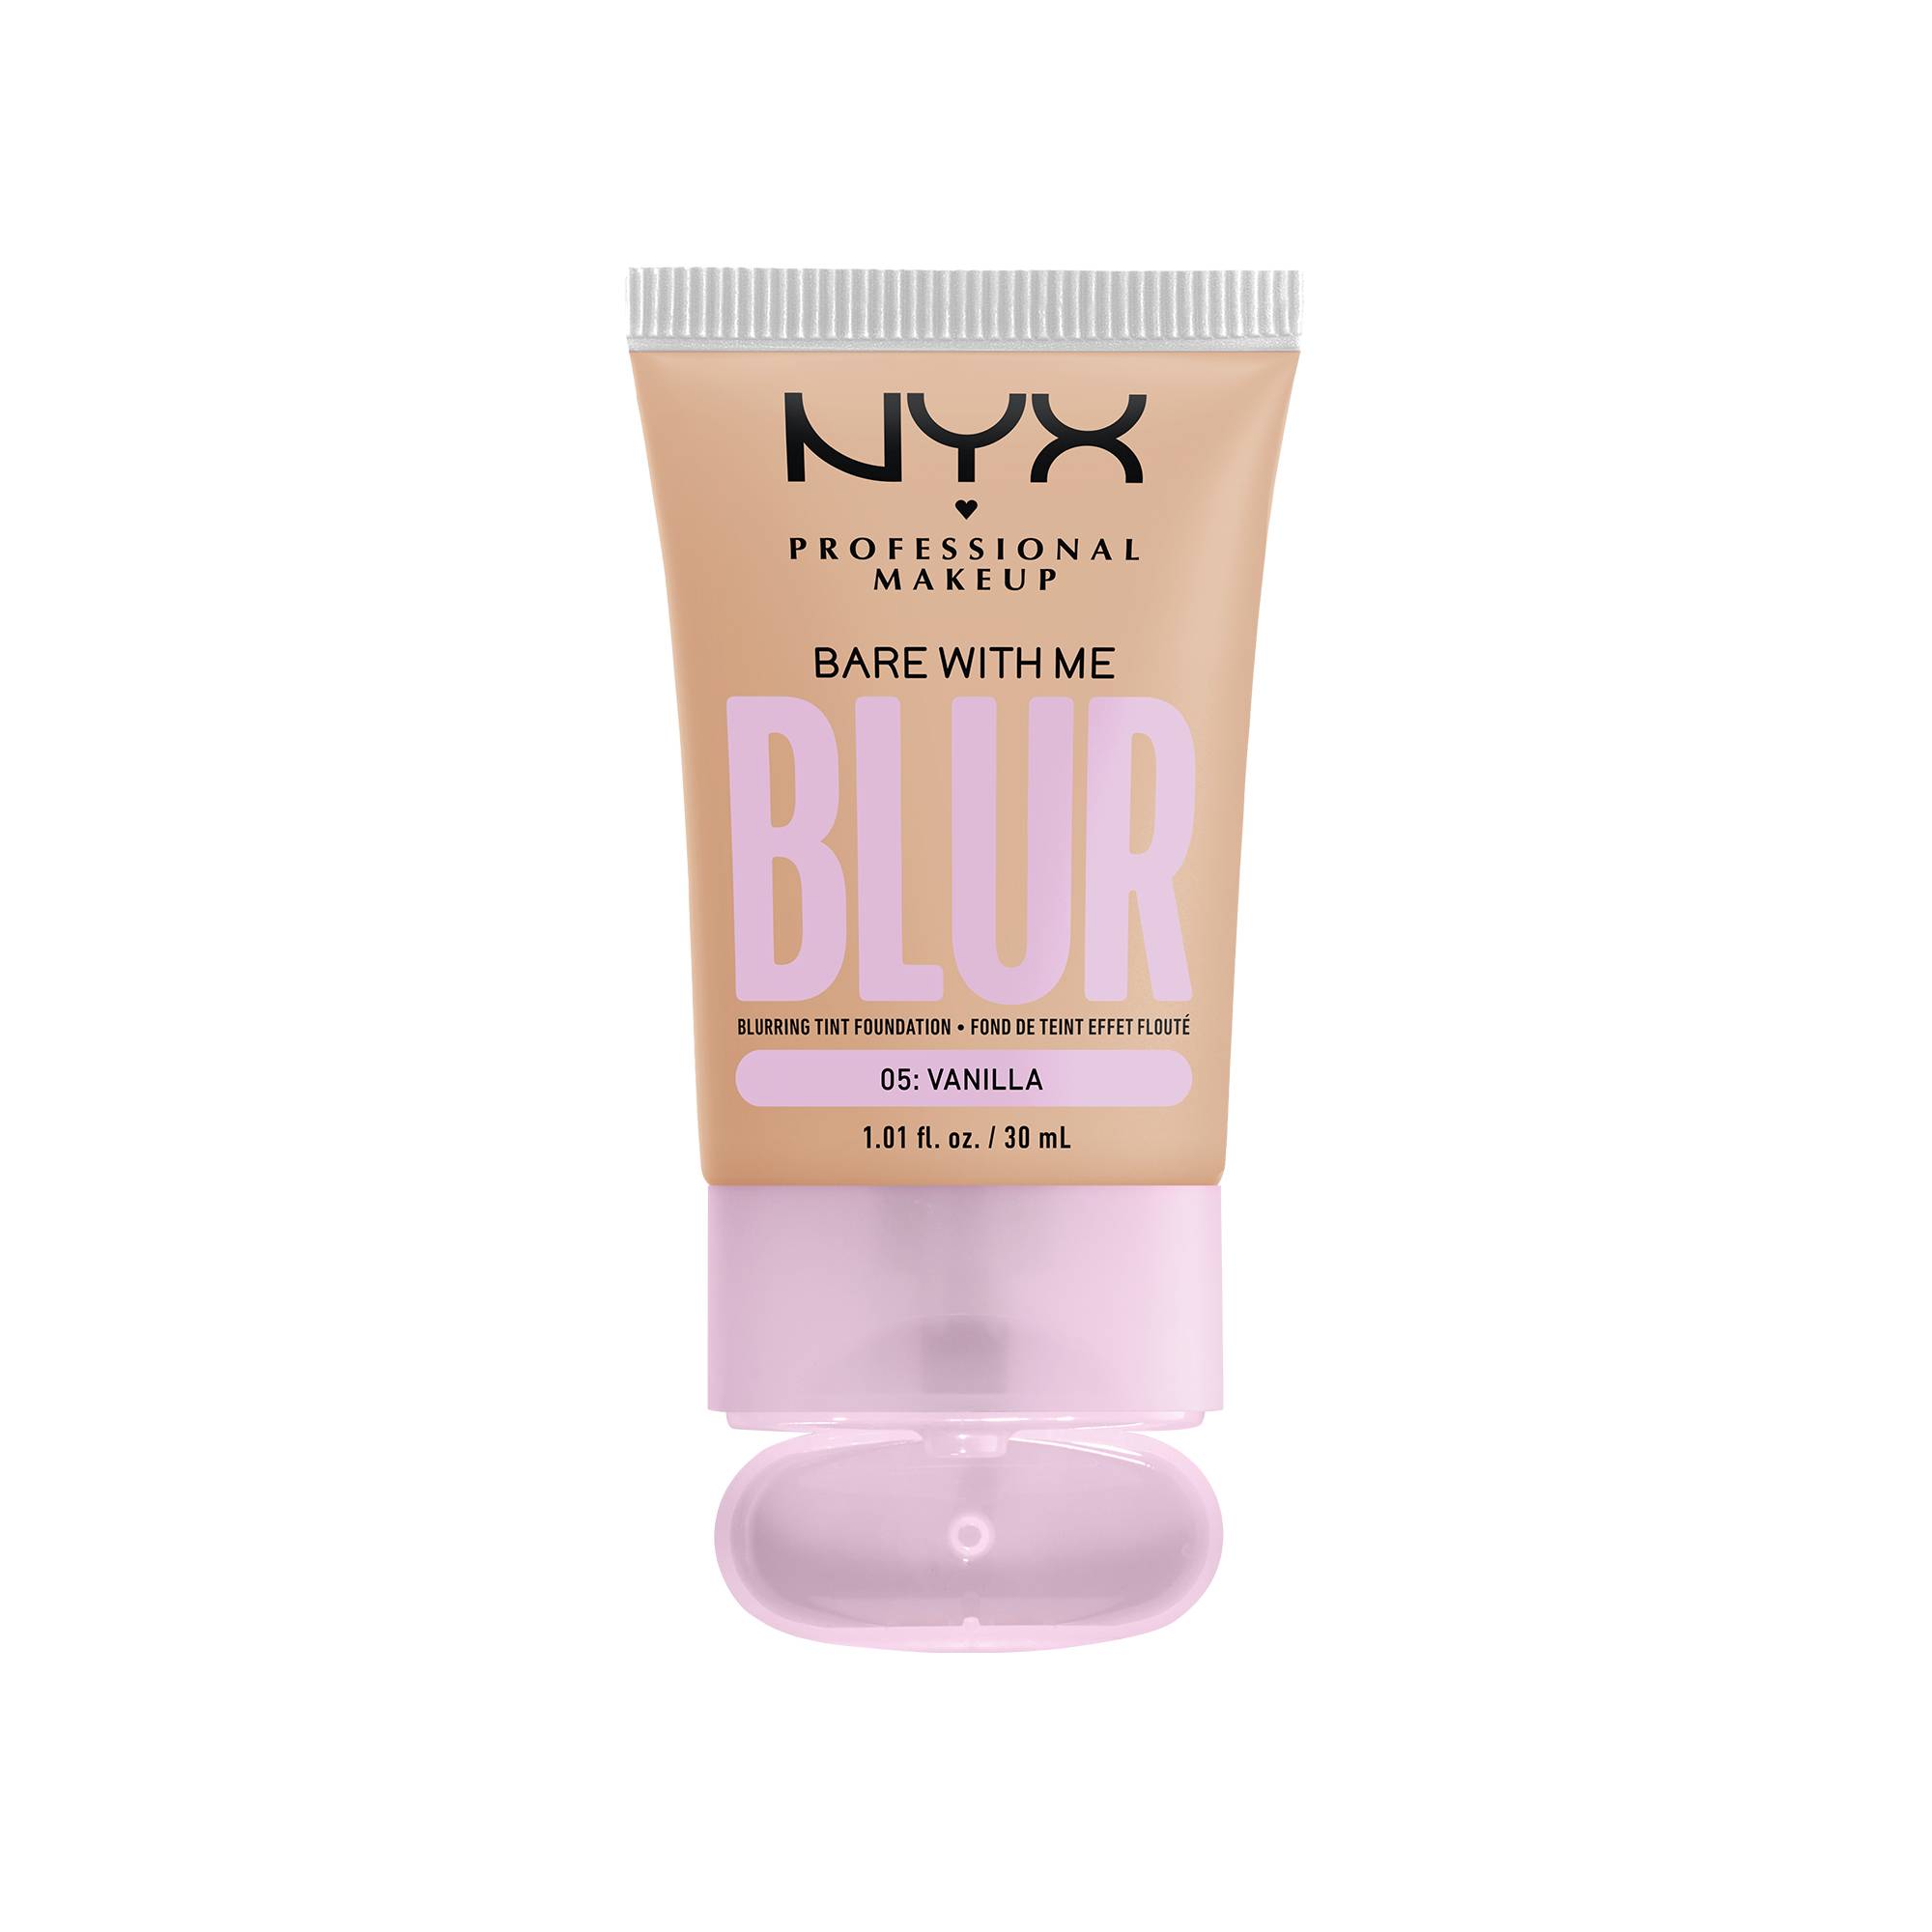 Fond de teint effet flouté Bare With Me Blur Vanilla de la marque NYX Professional Makeup - 1